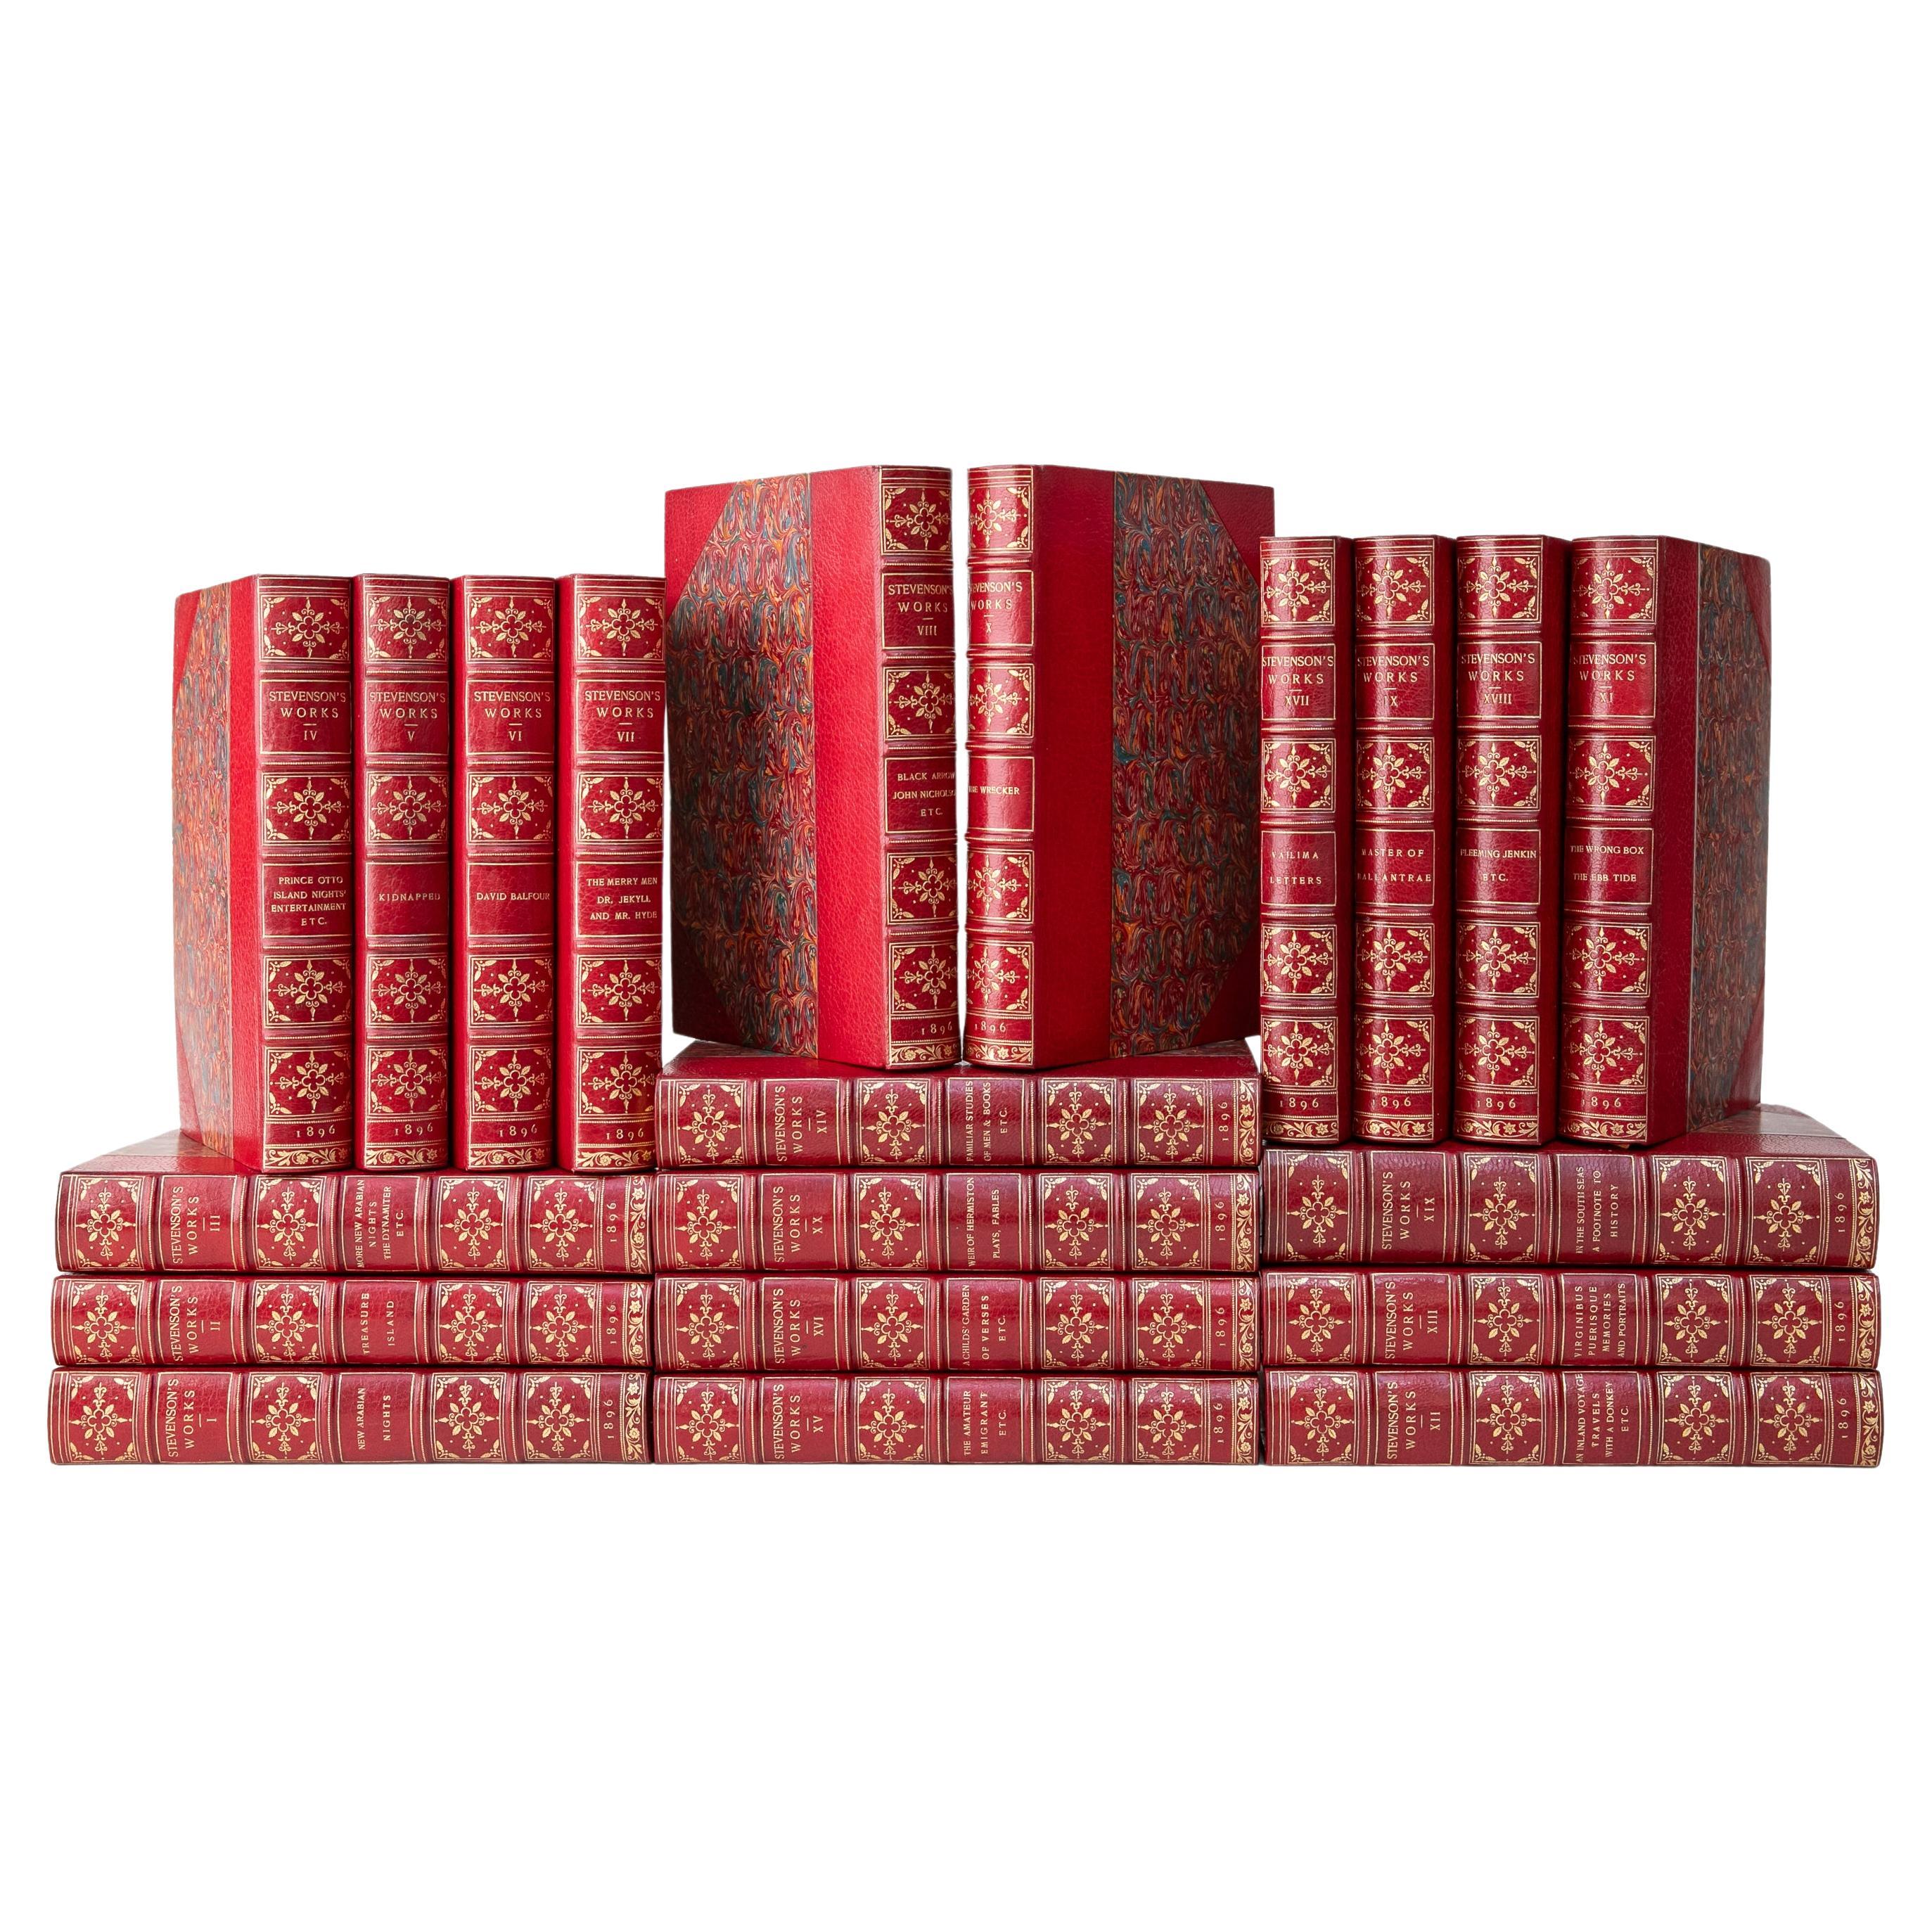 20 Volumes. R.L. Stevenson, Complete Works.